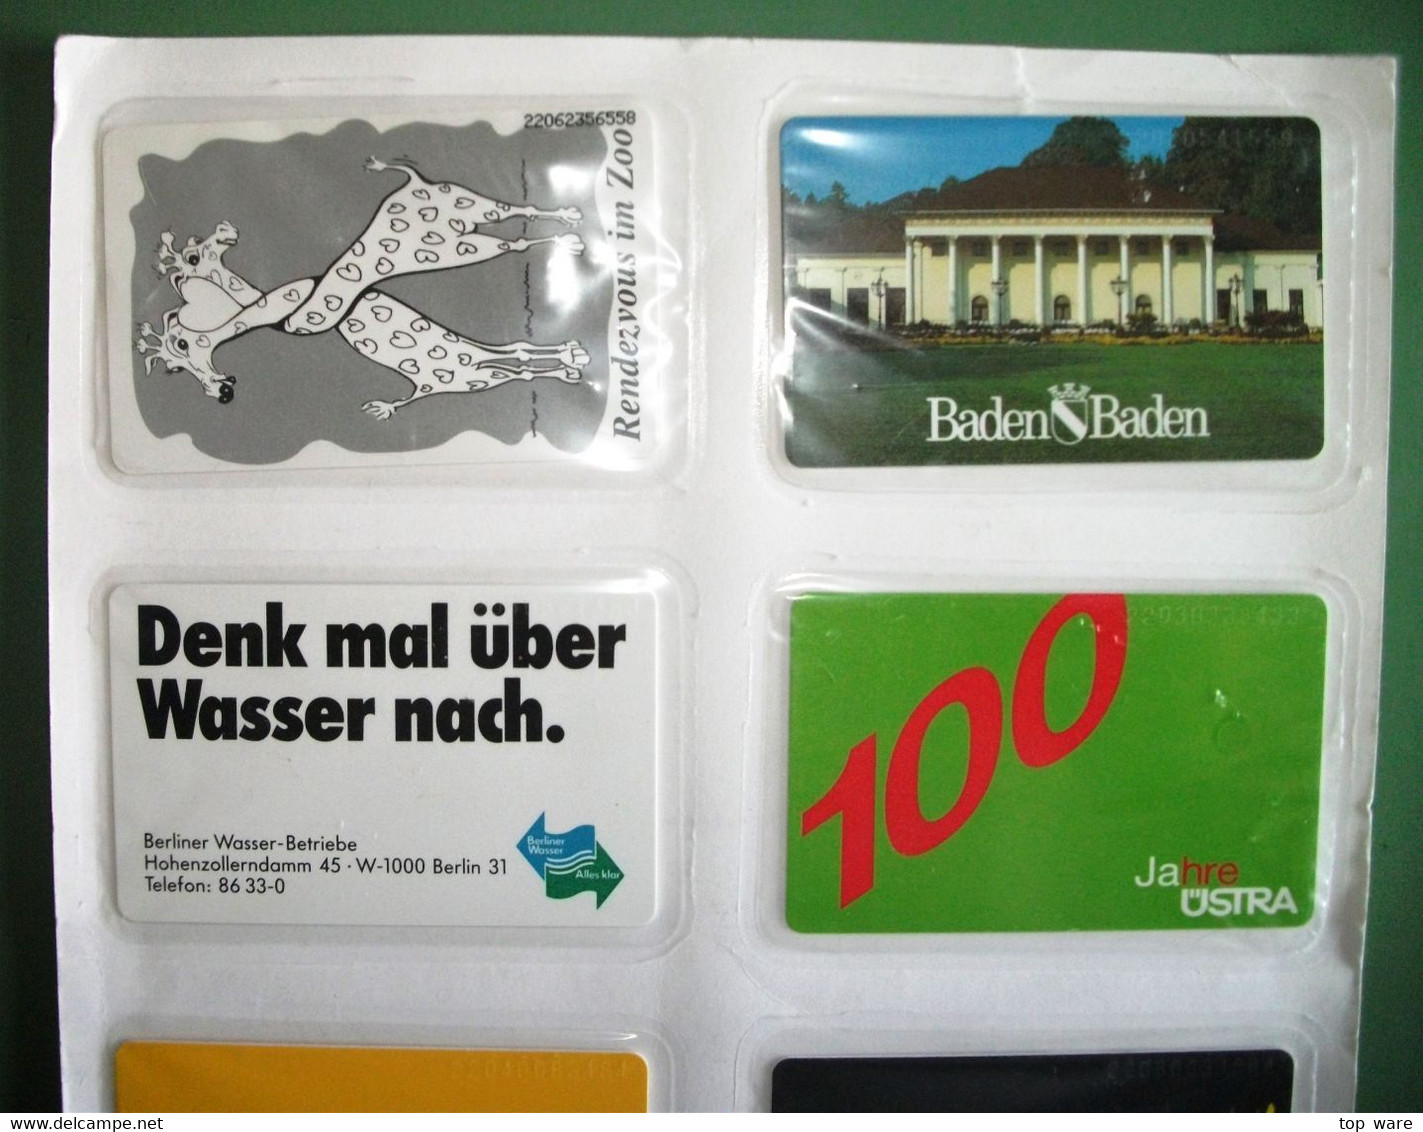 8 Telefonkarten Aus 1992 - S41 S44 S45 S47 S48 S49 S52 S57  - Original Verschweißt Vom Zentralen Kartenservice - Collezioni